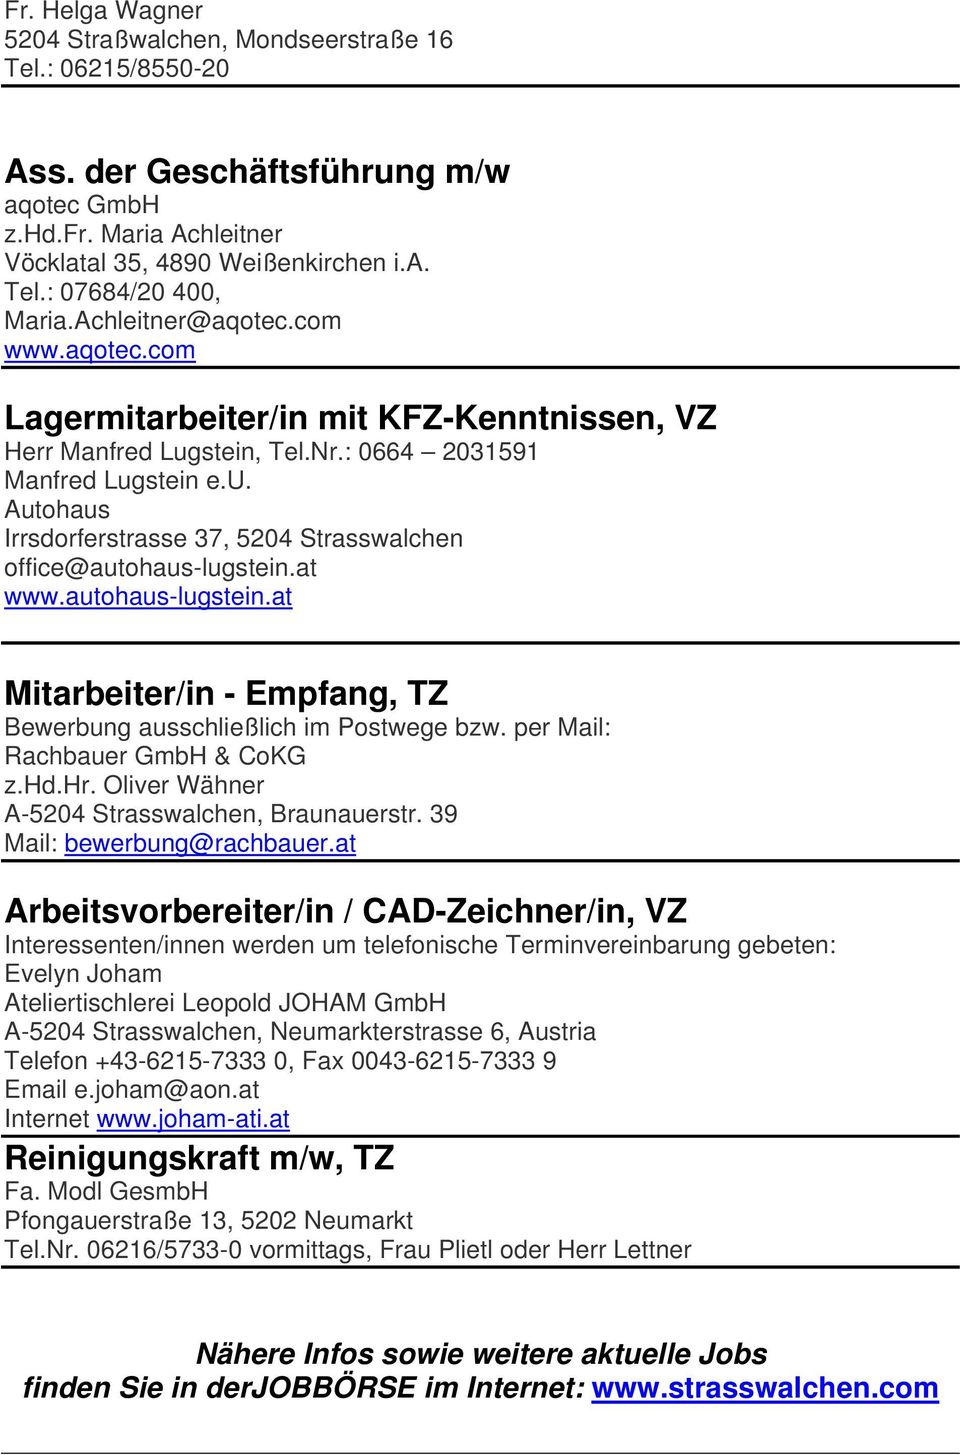 at www.autohaus-lugstein.at Mitarbeiter/in - Empfang, TZ Bewerbung ausschließlich im Postwege bzw. per Mail: Rachbauer GmbH & CoKG z.hd.hr. Oliver Wähner A-5204 Strasswalchen, Braunauerstr.